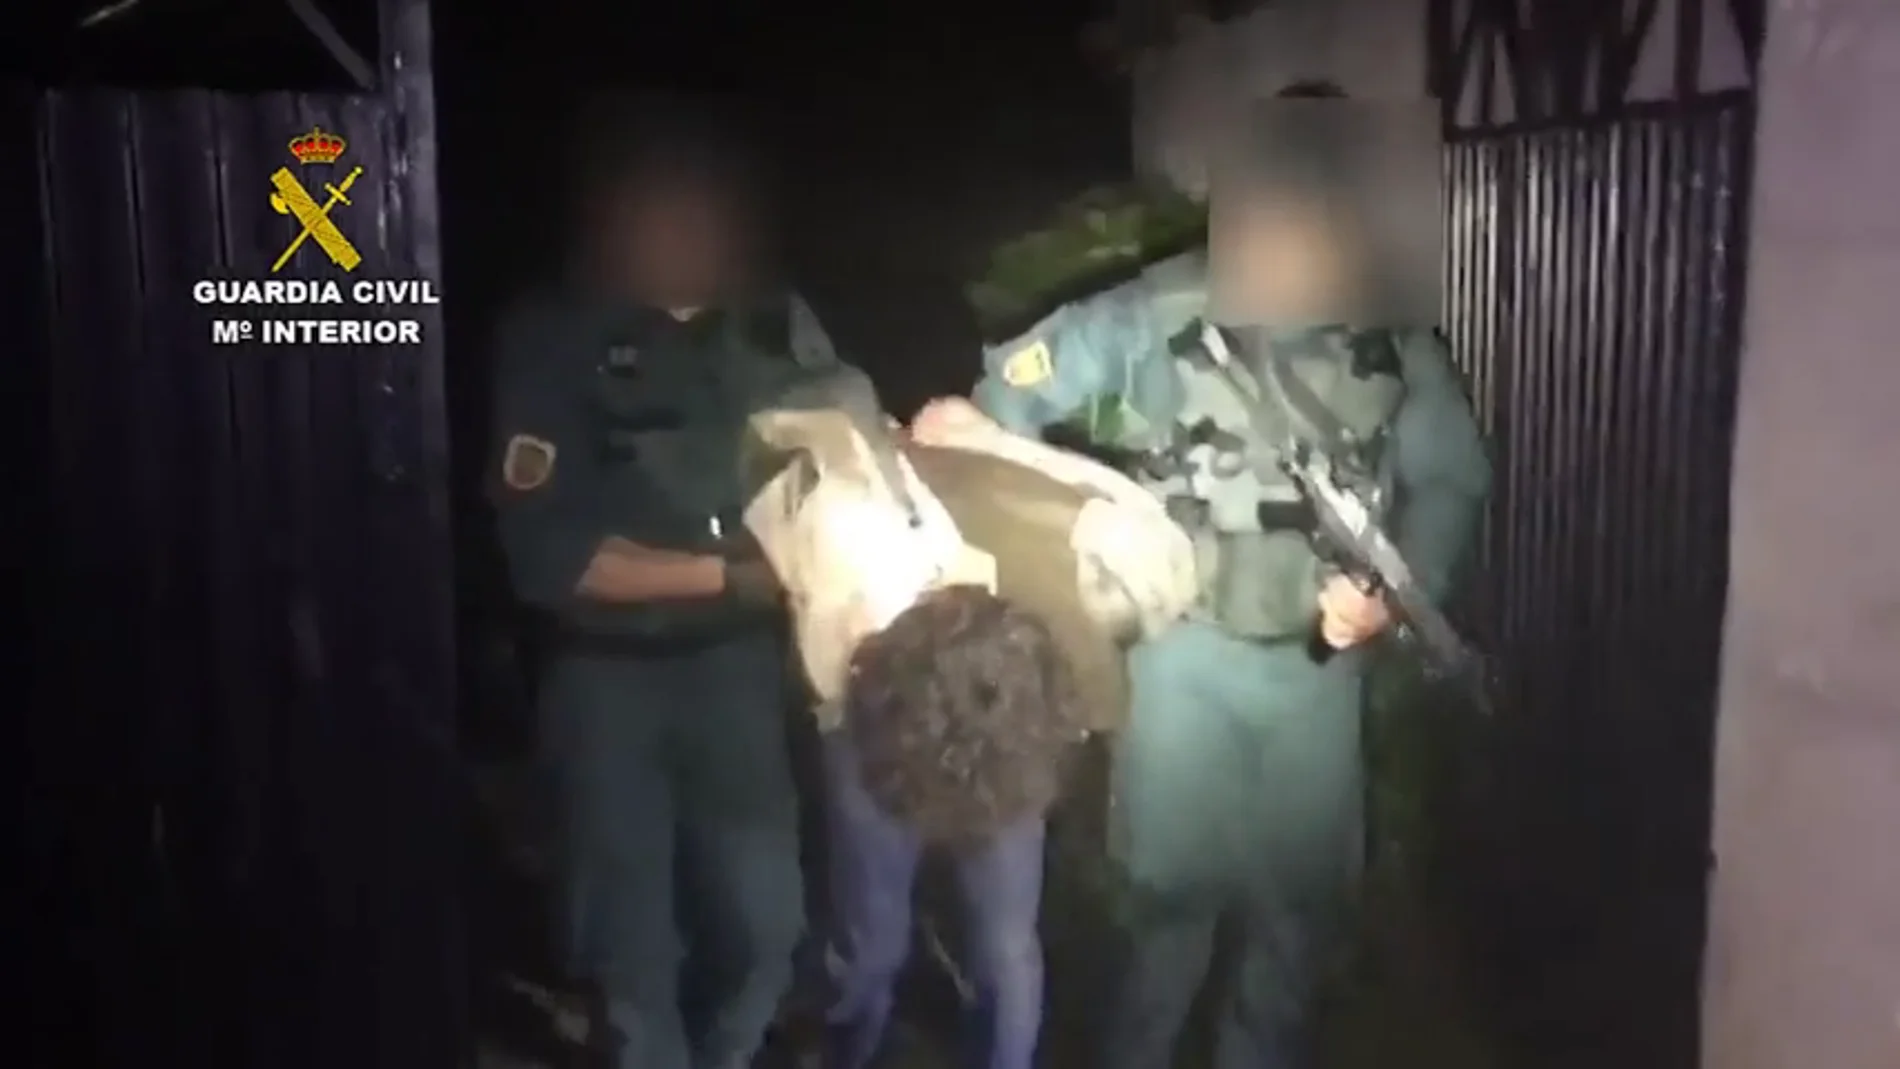 La Guardia Civil detiene al hombre armado que huyó tras atrincherarse en Turieno